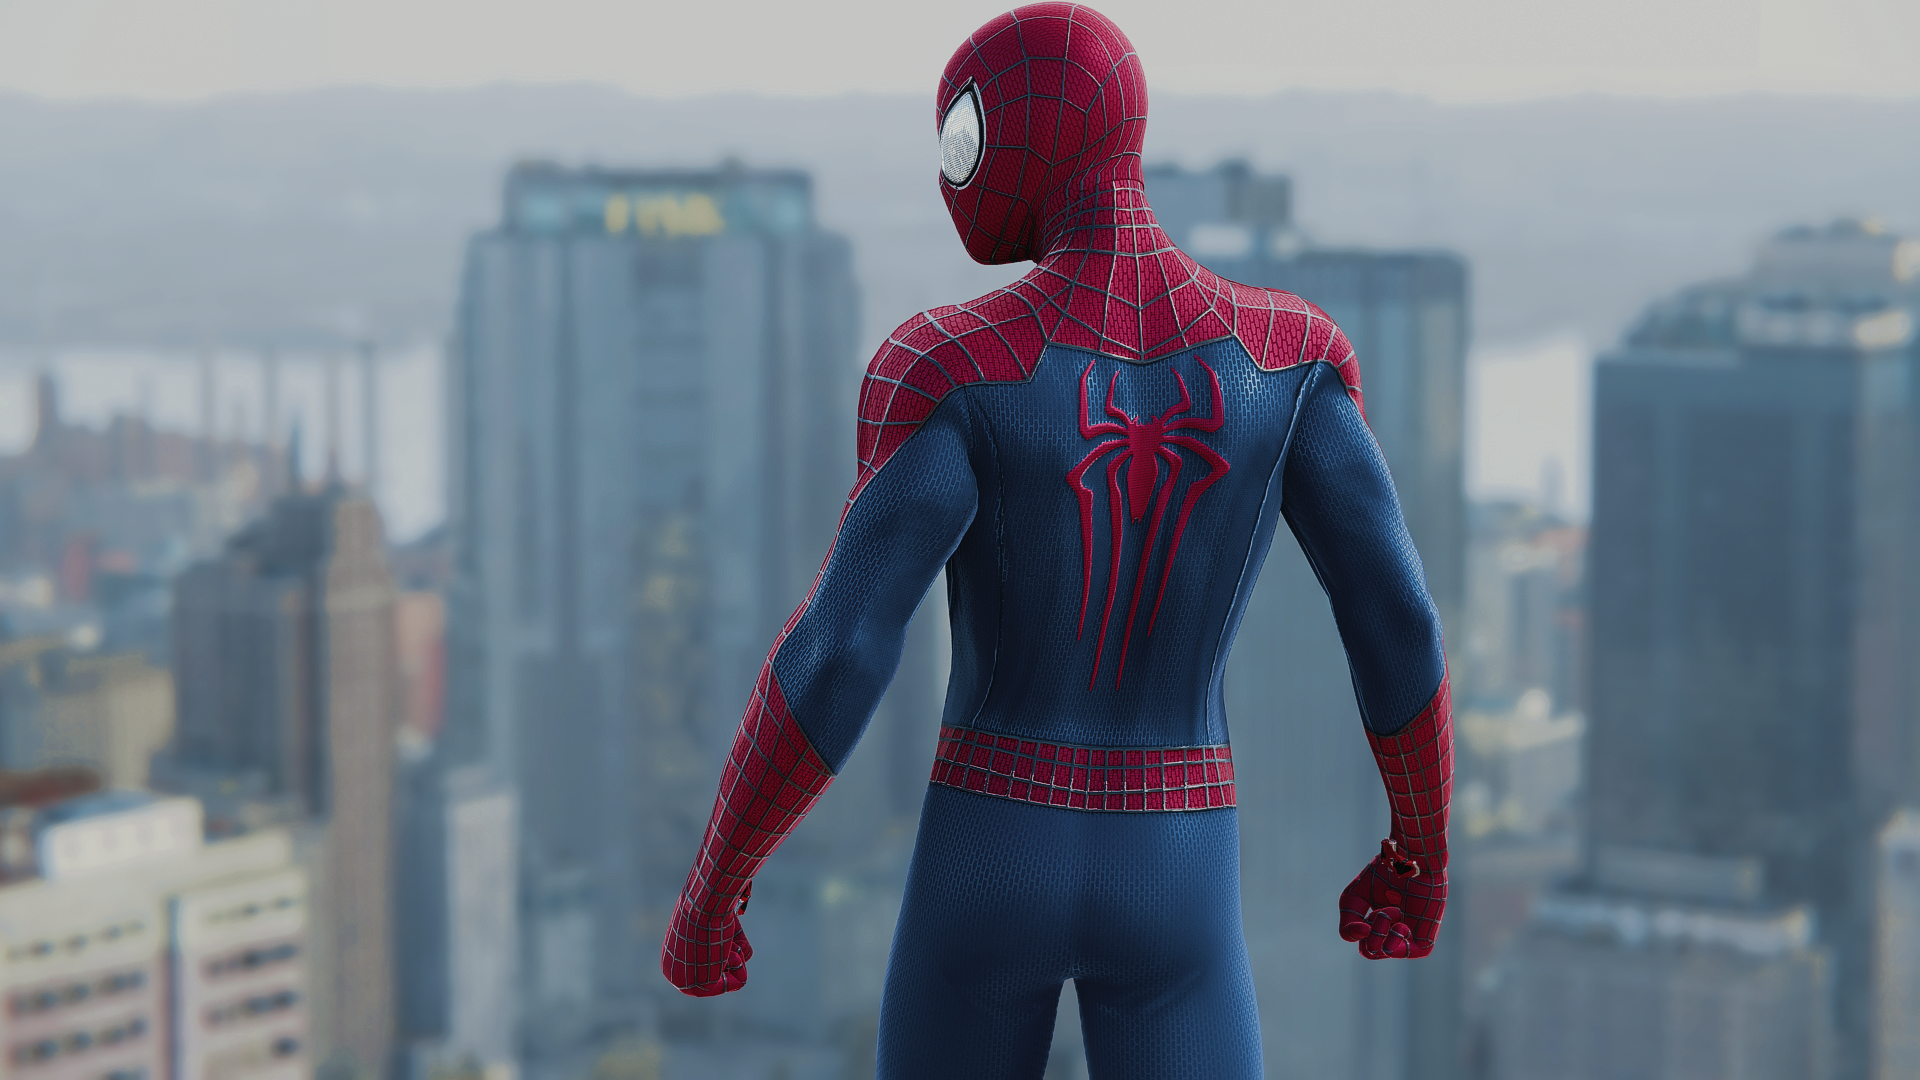 Marvel s spider man 2 1.3 2. Marvel Spider man 2 tasm 2 Suit. Marvel Spider man 2 костюмы. The amazing Spider-man 2 костюмы. Ьфкмуды Spider man 2 костюмы.